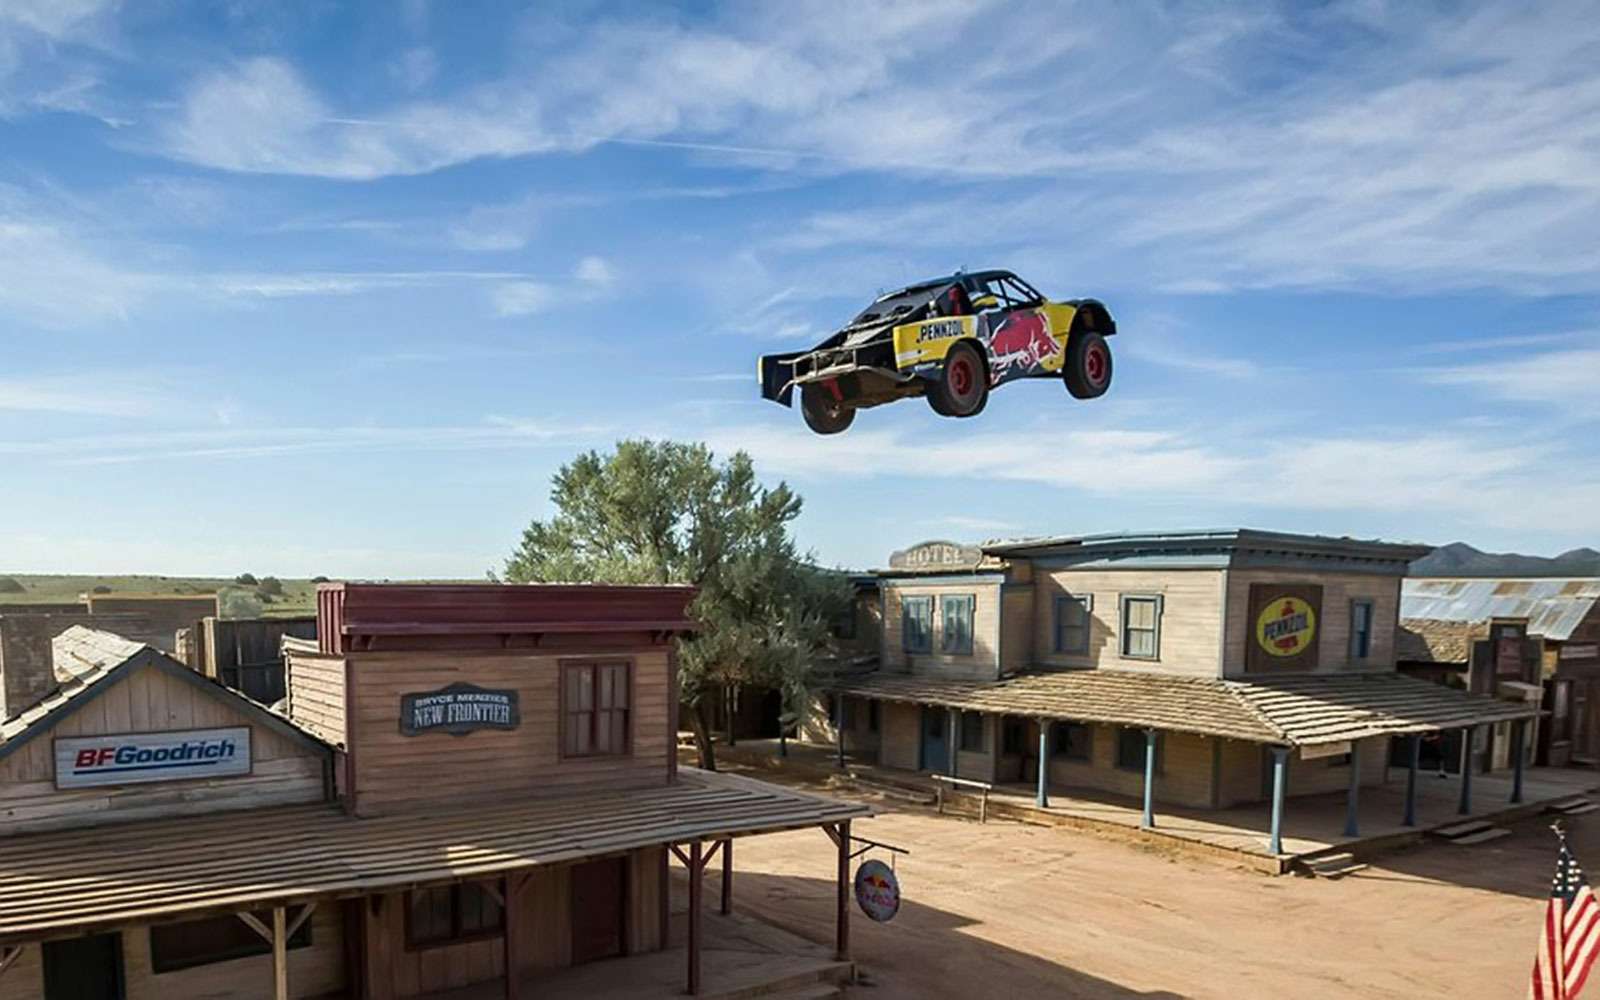 Местом проведения рекордного прыжка на автомобиле стала подретушированная стилизованная деревушка в штате Нью-Мексико.